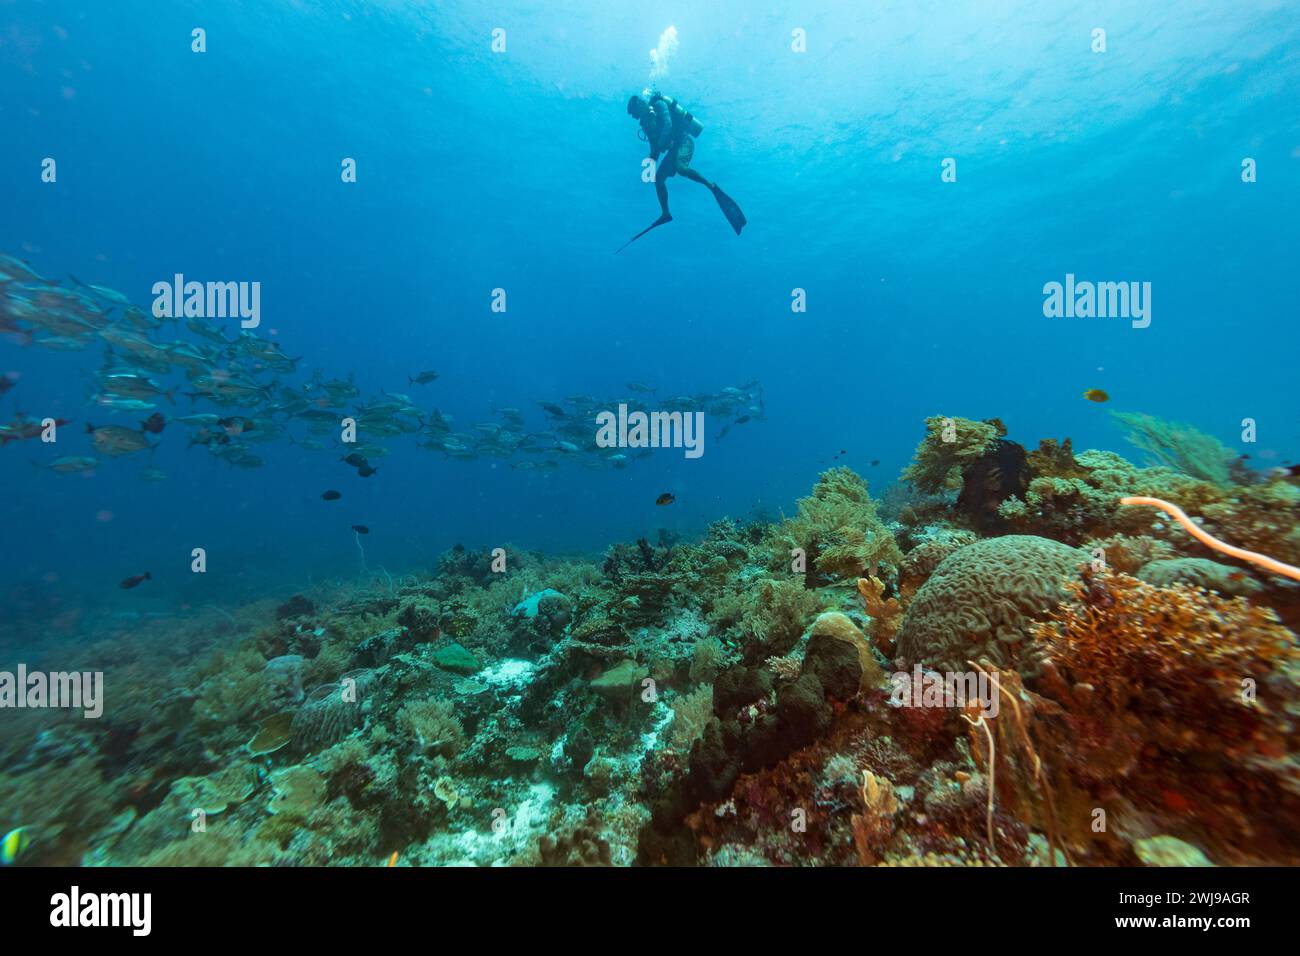 La scuola di pesci passa davanti a un subacqueo che esplora il paesaggio di una barriera corallina nelle acque blu tropicali Foto Stock